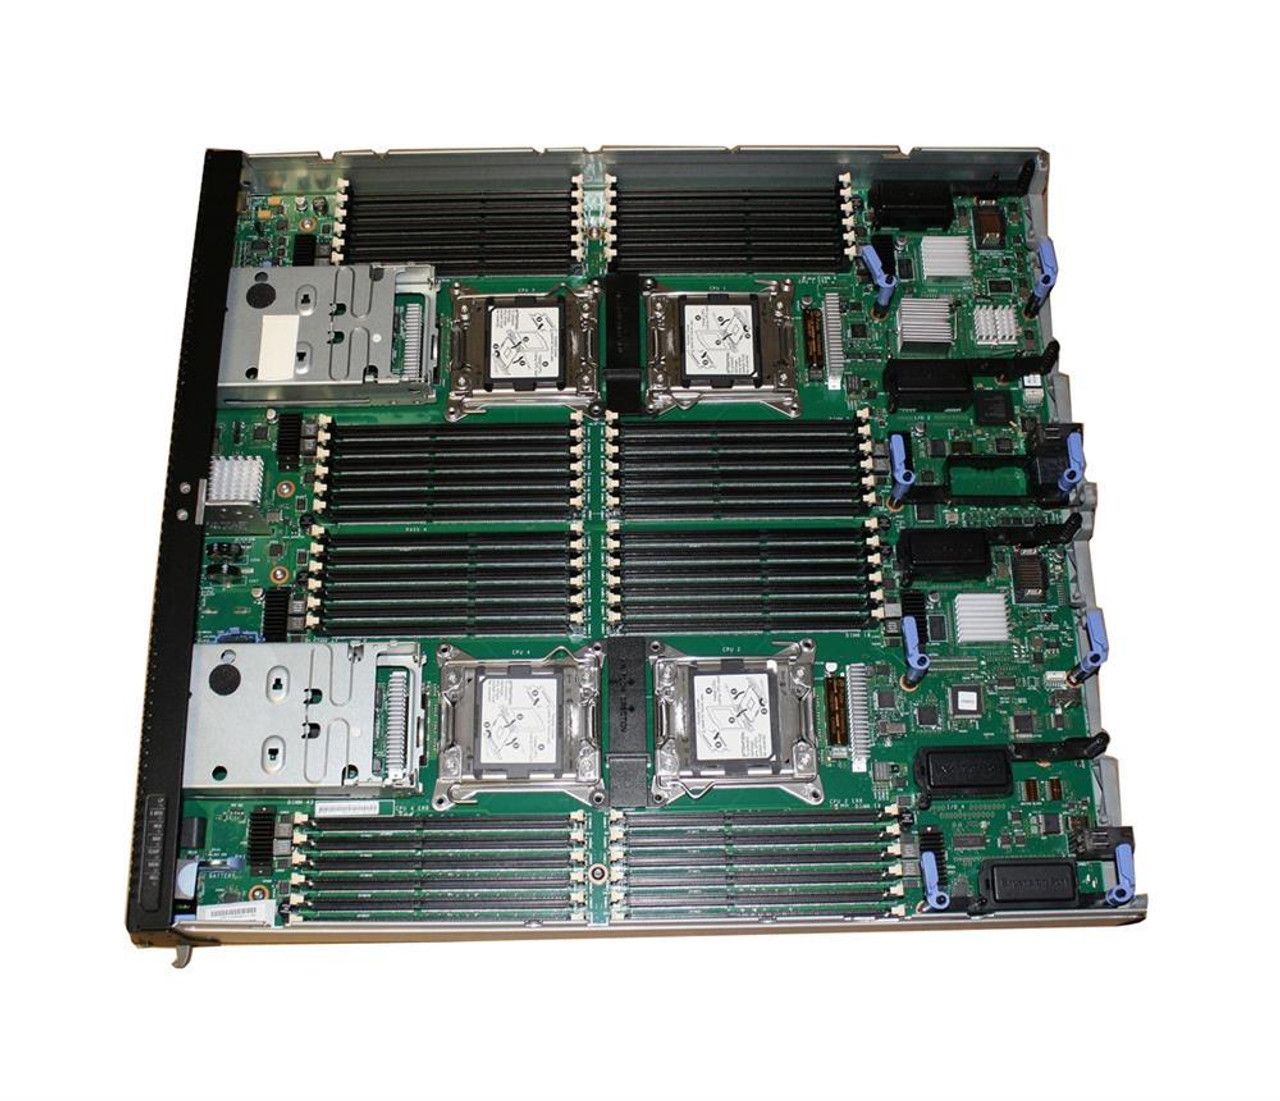 44T1213-02 Lenovo System Board (Motherboard) for Flex X440 Node (Refurbished)